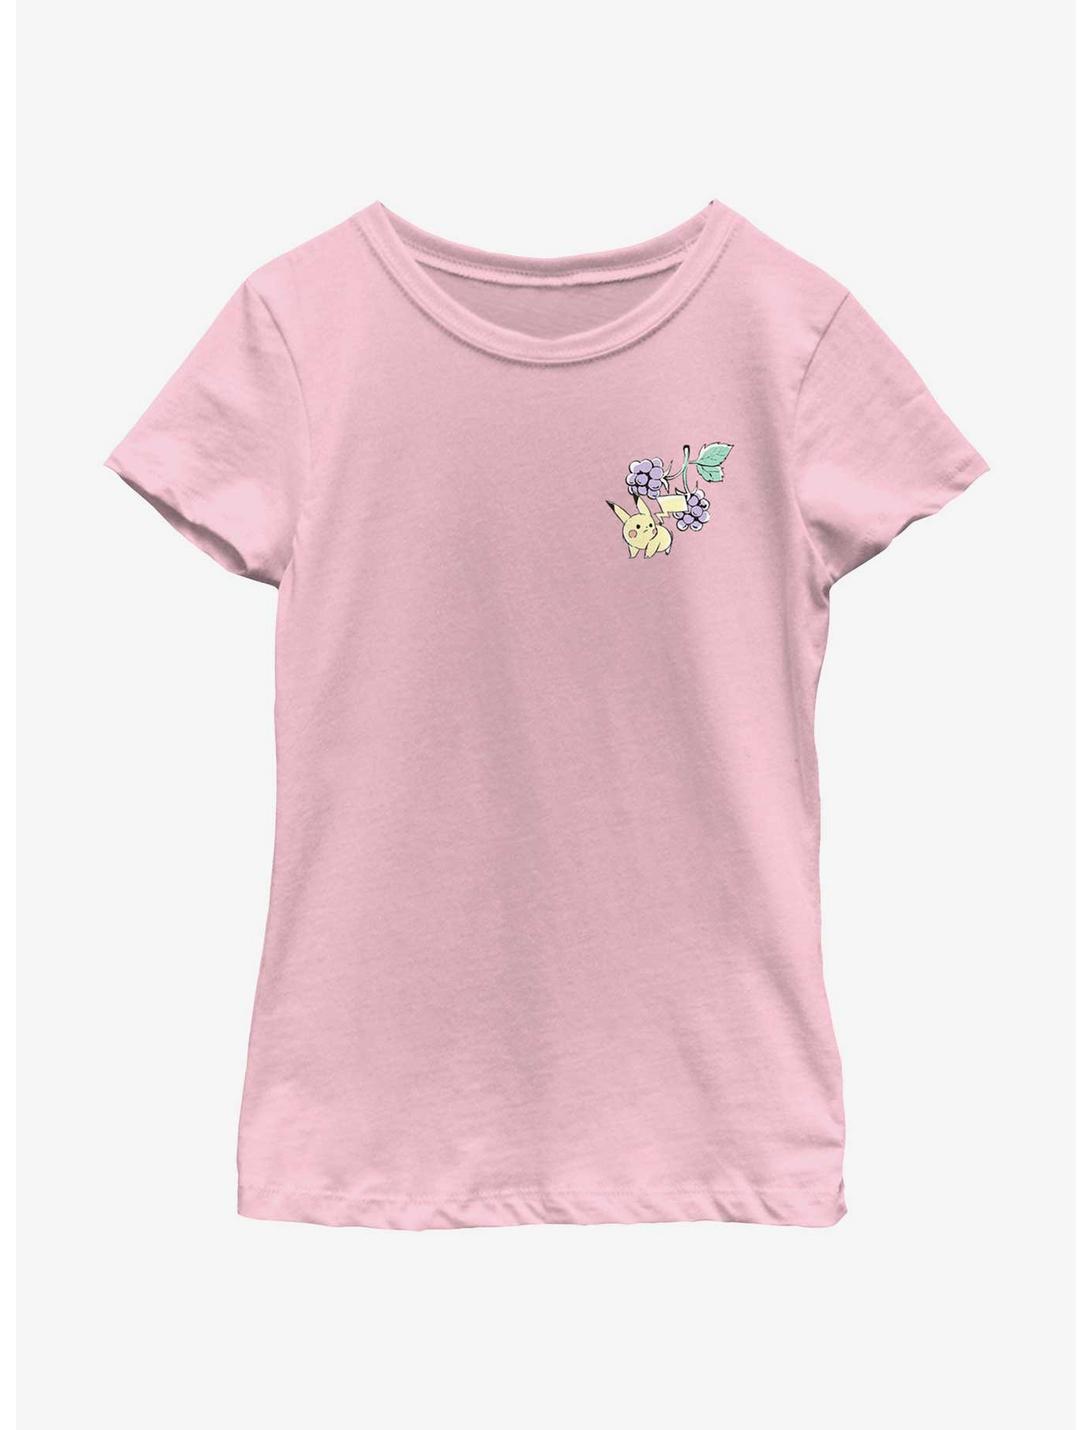 Pokemon Chibi Pikachu Grapes Youth Girls T-Shirt, PINK, hi-res